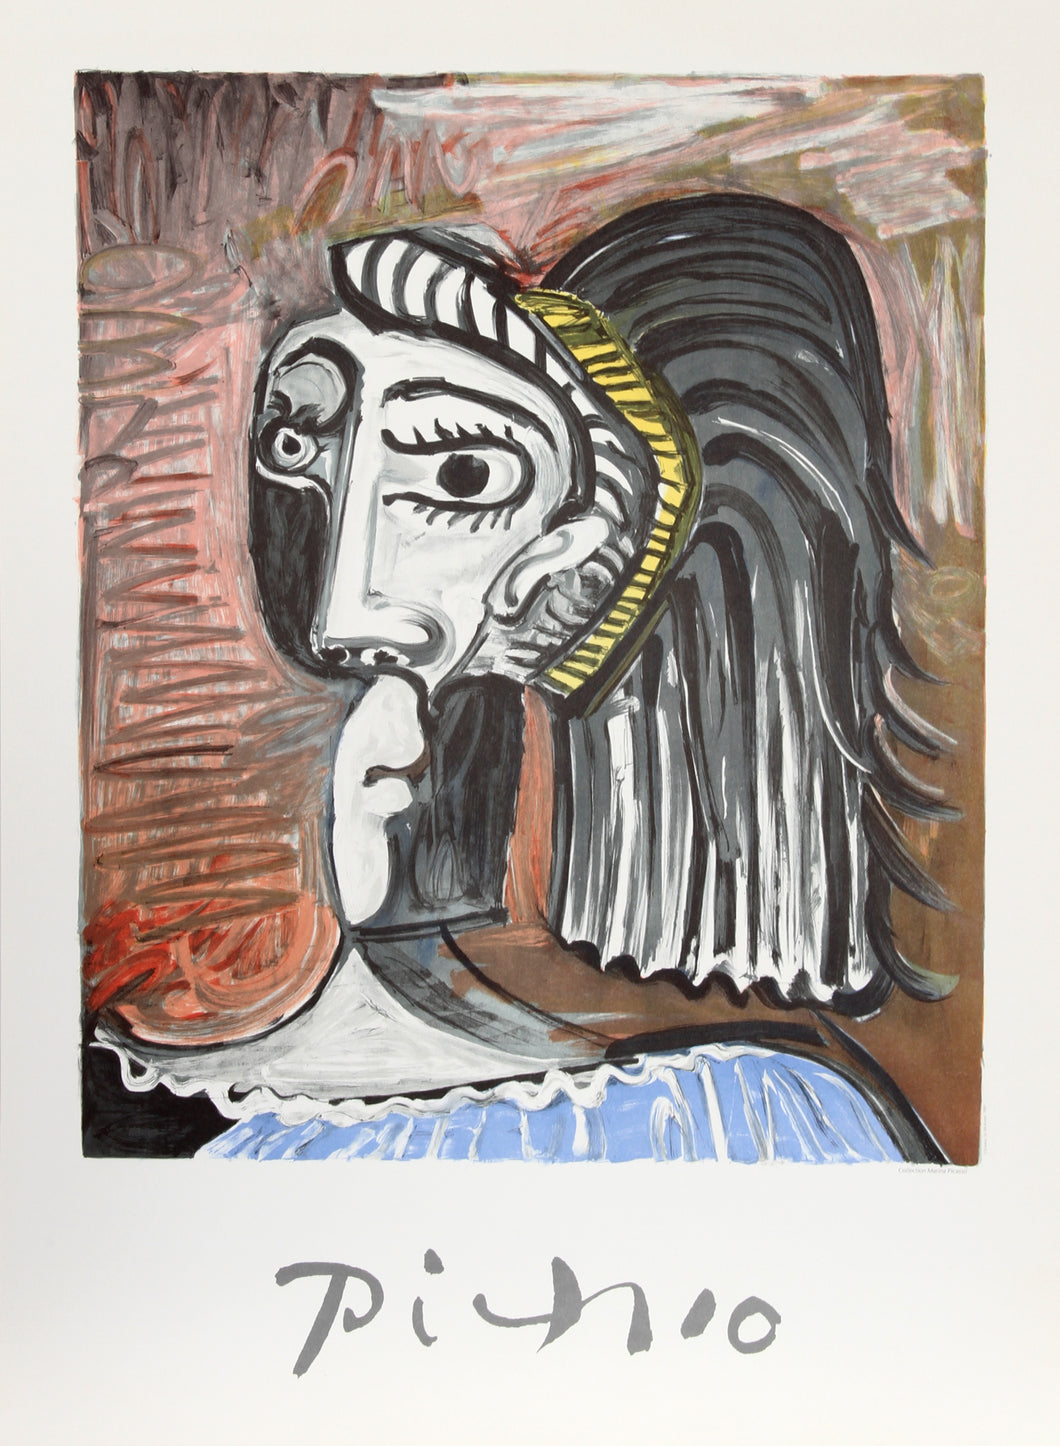 Pablo Picasso, Tete de Femme, 25-1-k, Lithograph